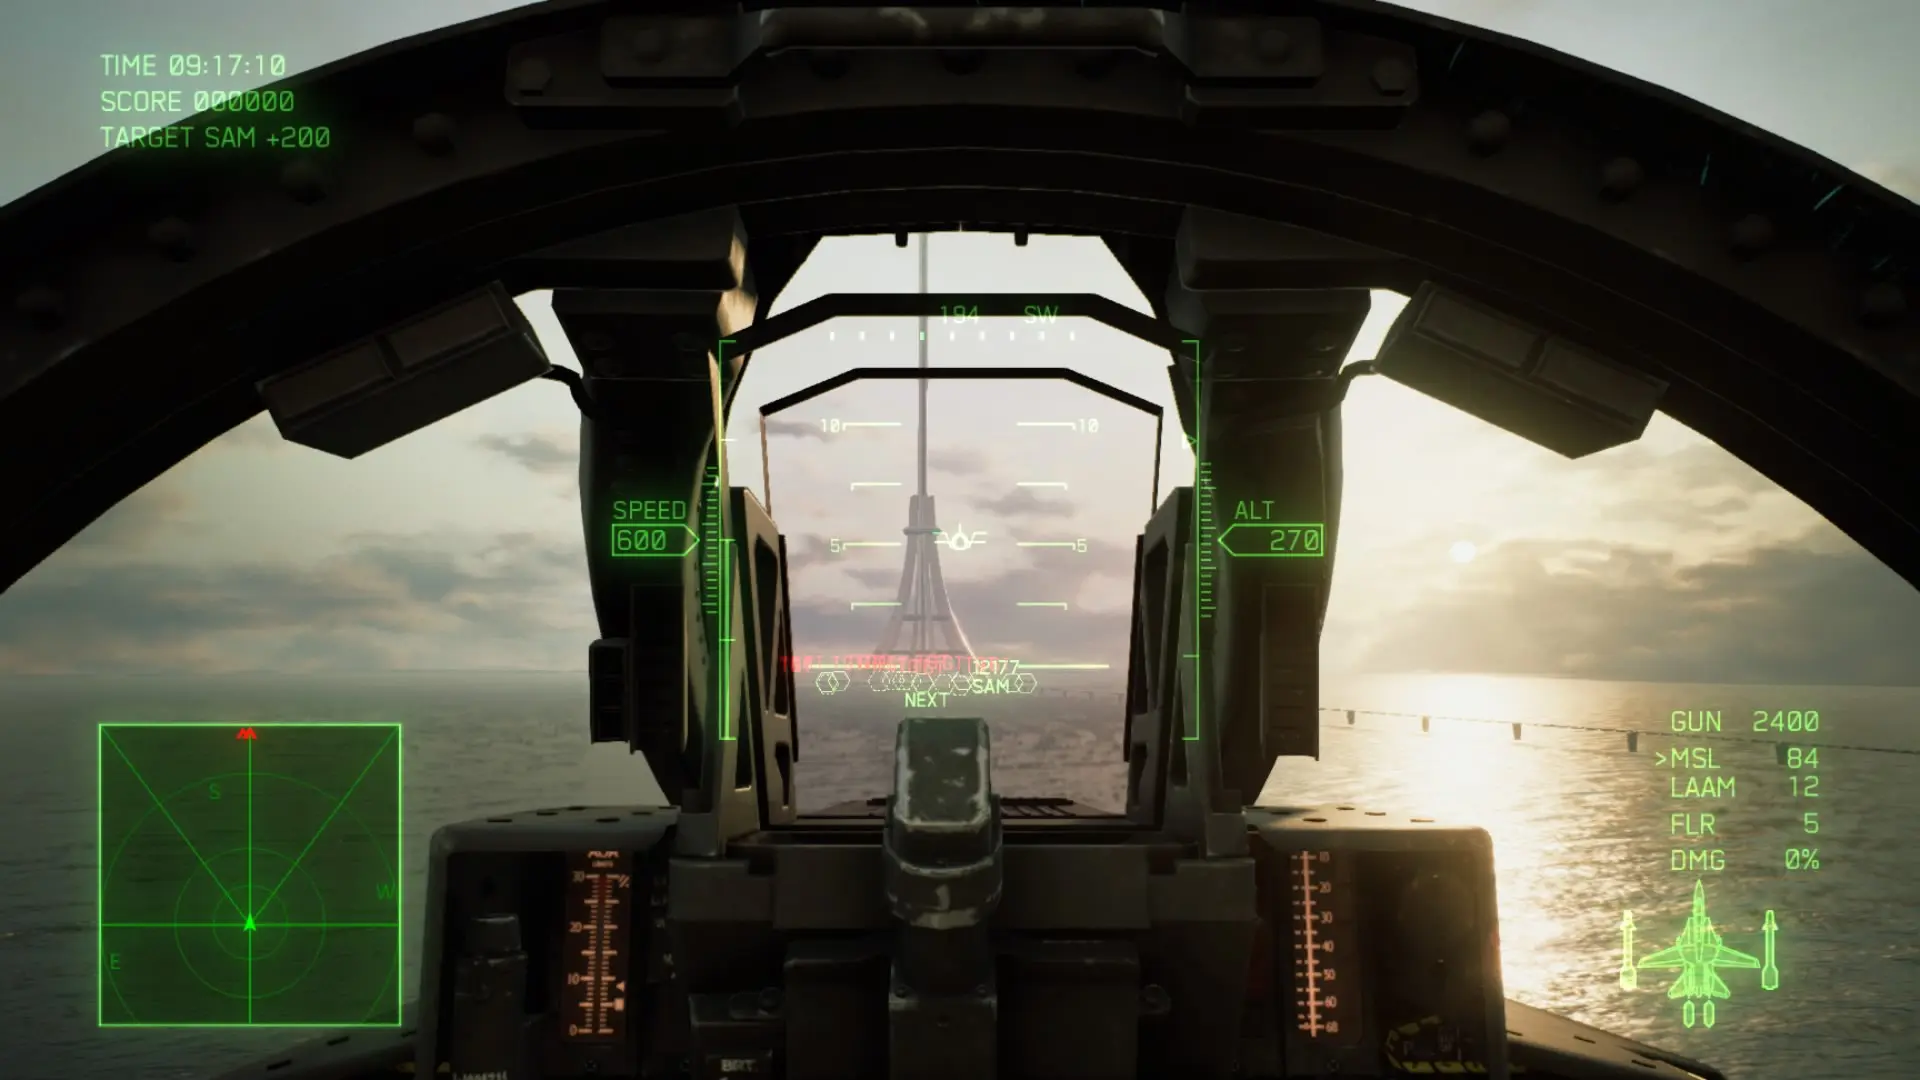 دانلود بازی Ace Combat 7: Skies Unknown - Deluxe Edition برای کامپیوتر PC